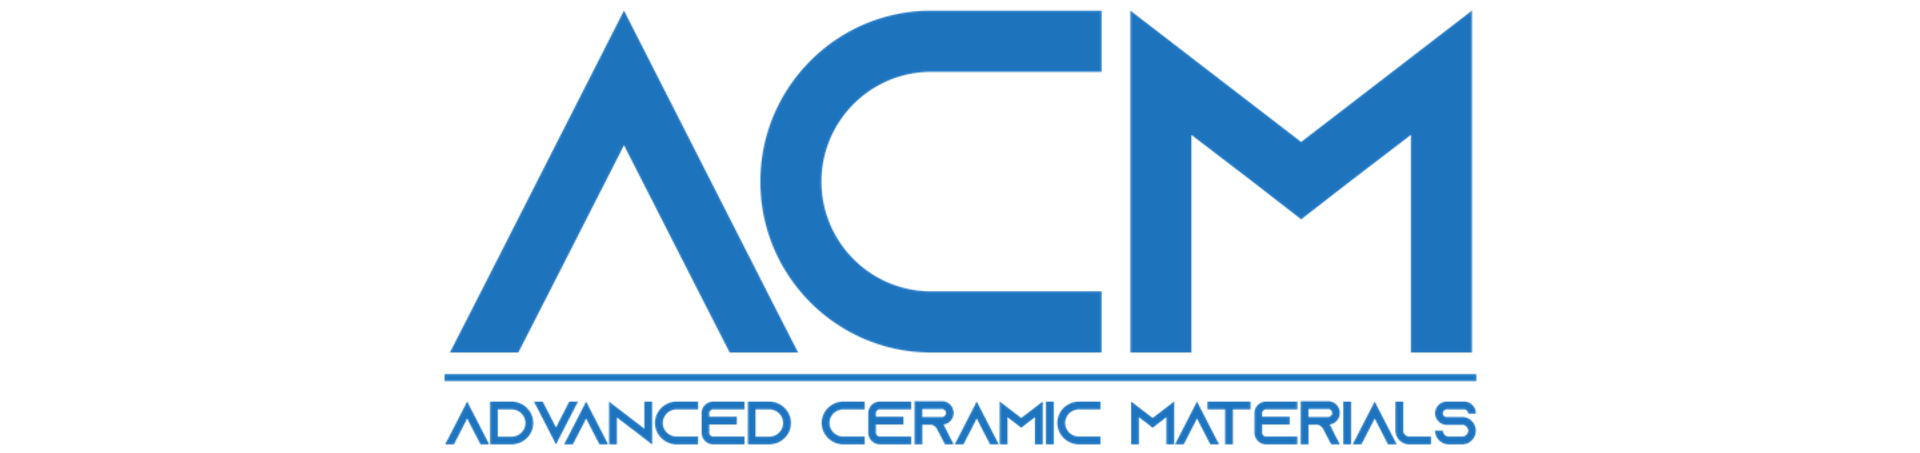 Advanced Ceramic Materials (ACM)